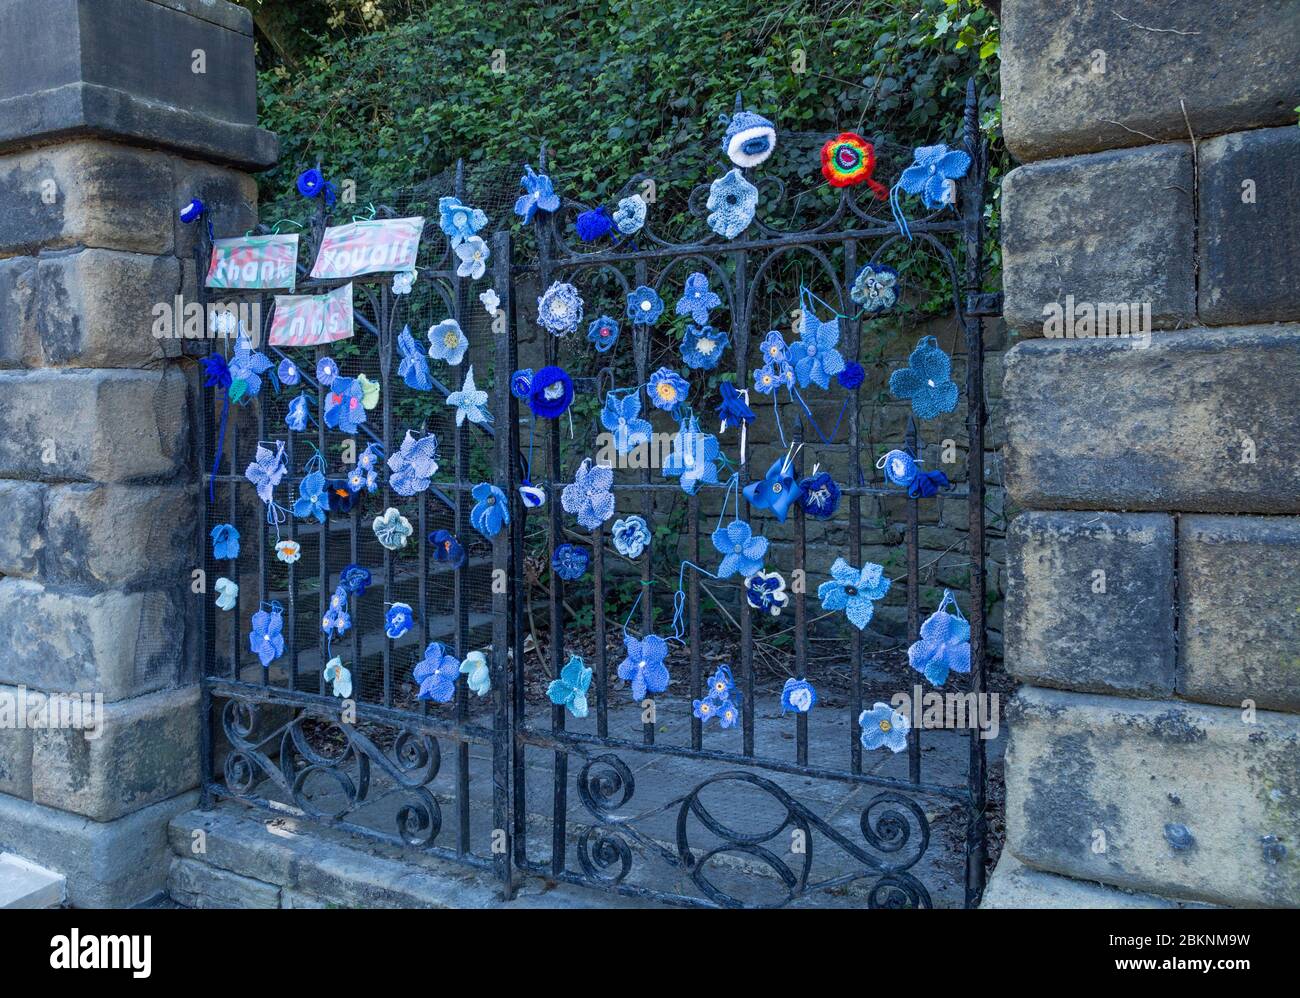 Une porte d'église à Baildon, dans le Yorkshire décorée de fleurs en tricot bleu et crochetées à l'appui du NHS pendant la pandémie du coronavirus. Banque D'Images